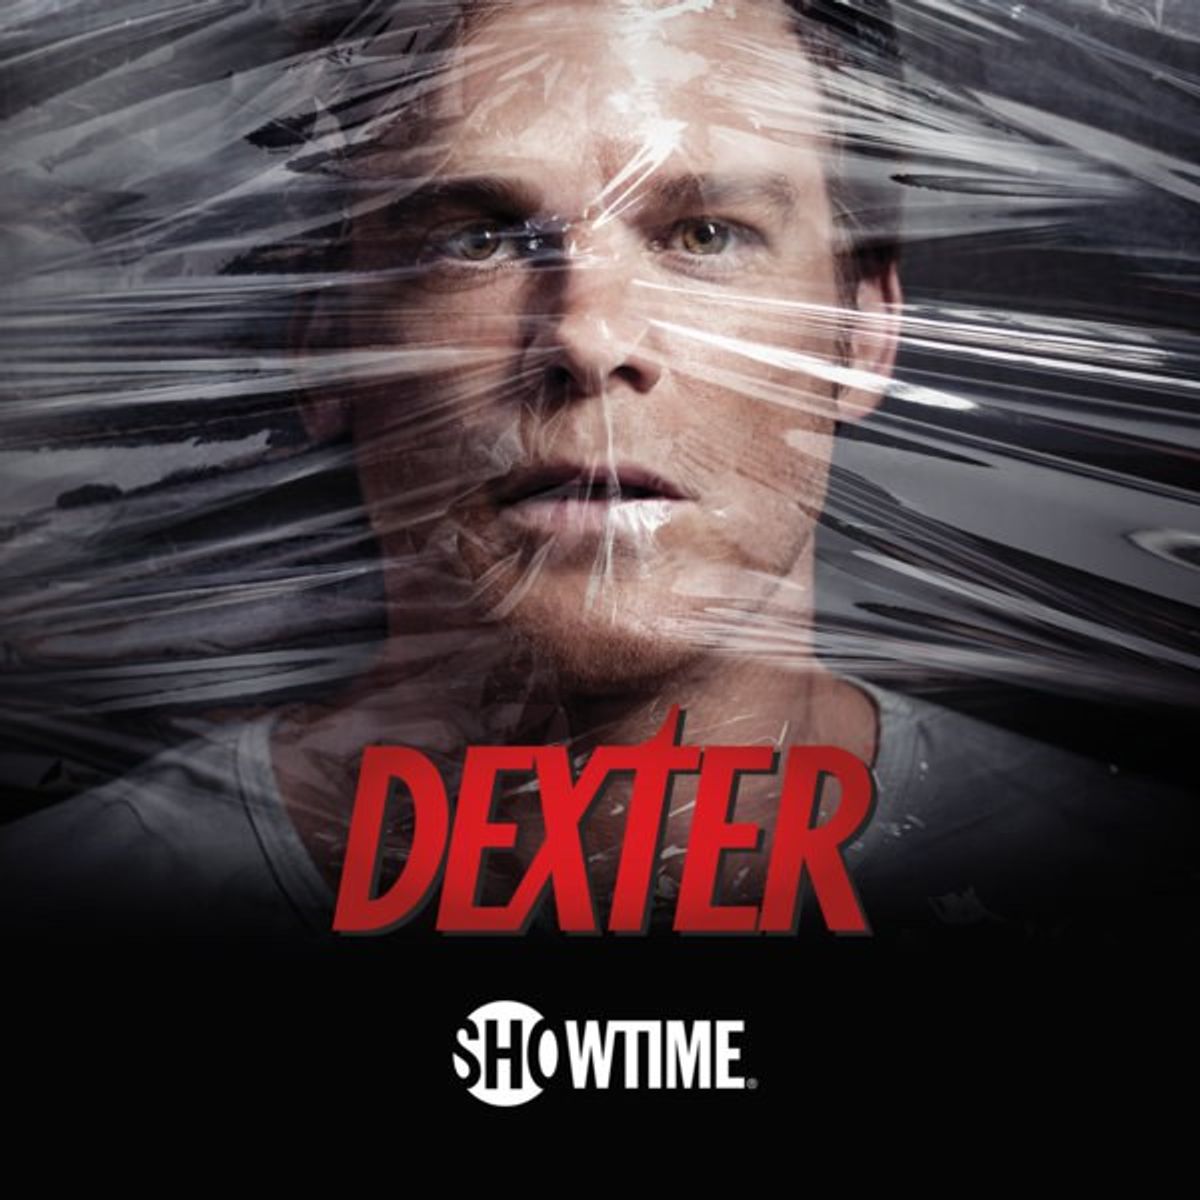 5 Reasons You Should Watch 'Dexter'